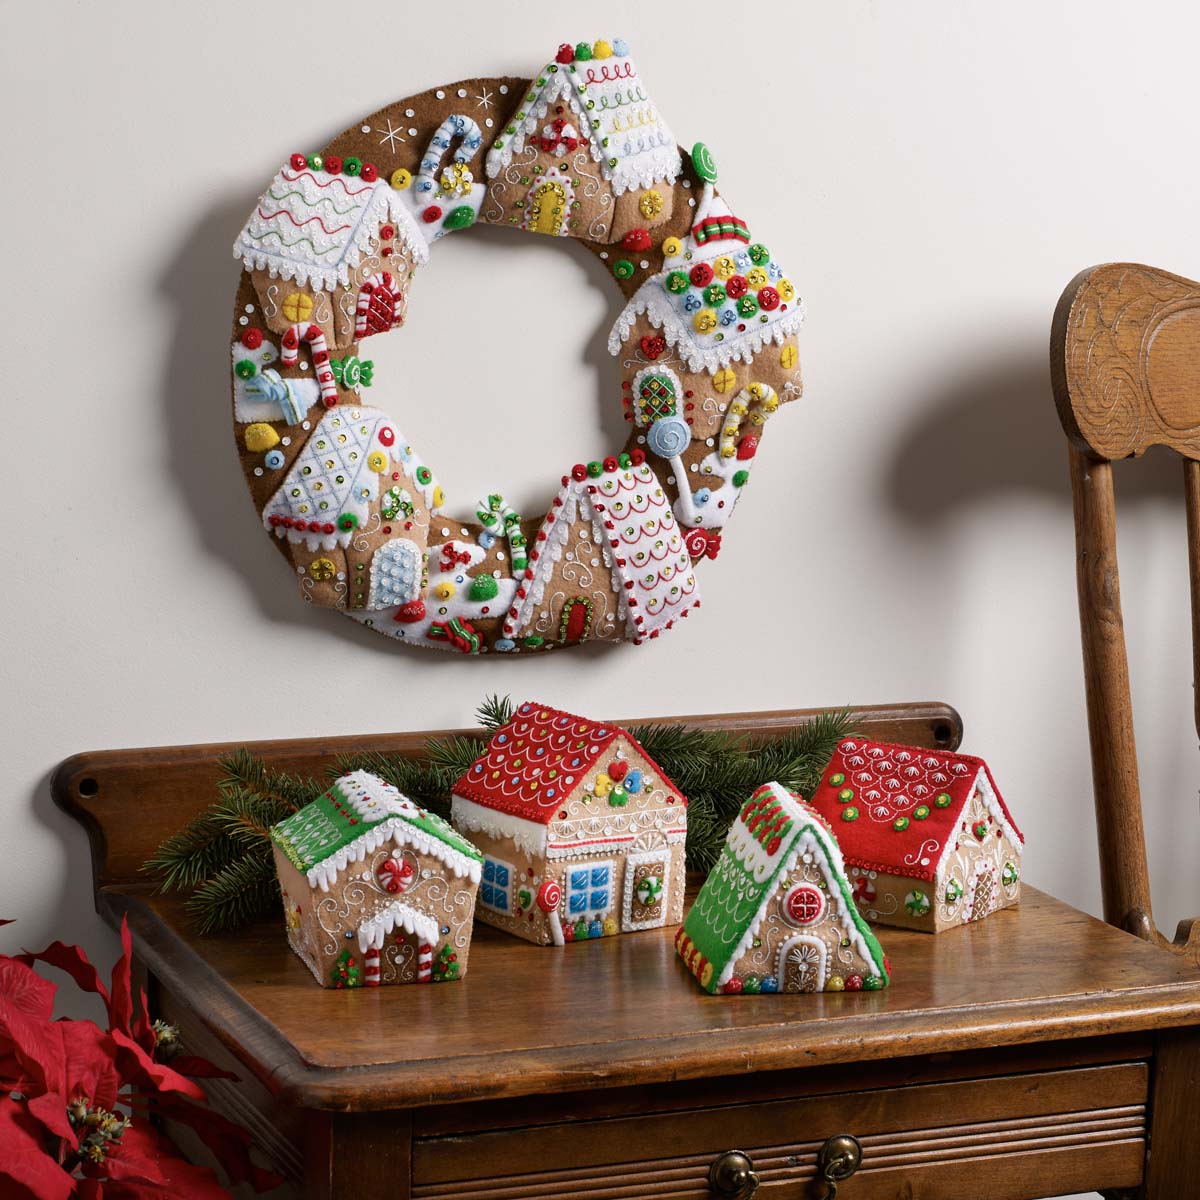 Bucilla ® Seasonal - Felt - Home Decor - Gingerbread Christmas Wreath - 89386E